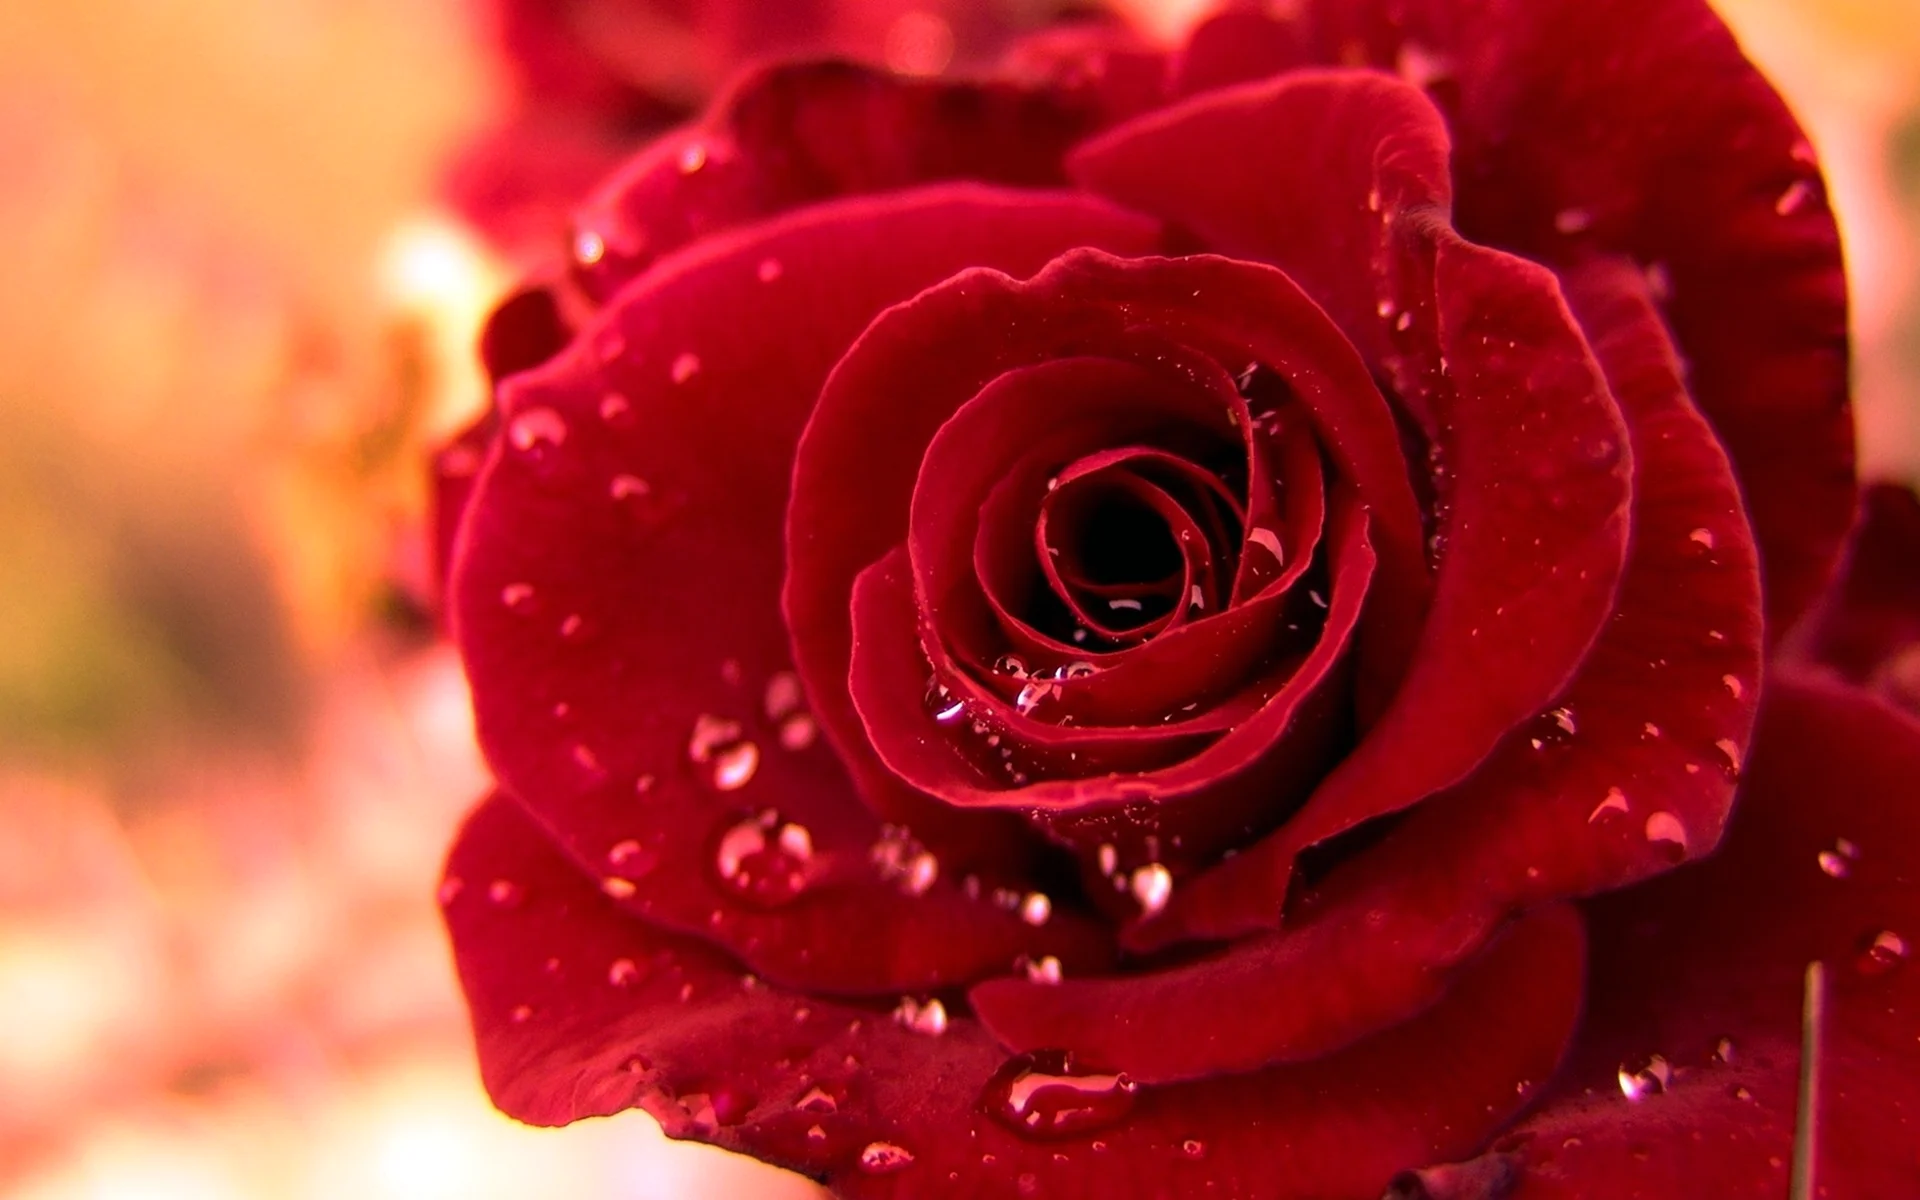 Красивые красные розы